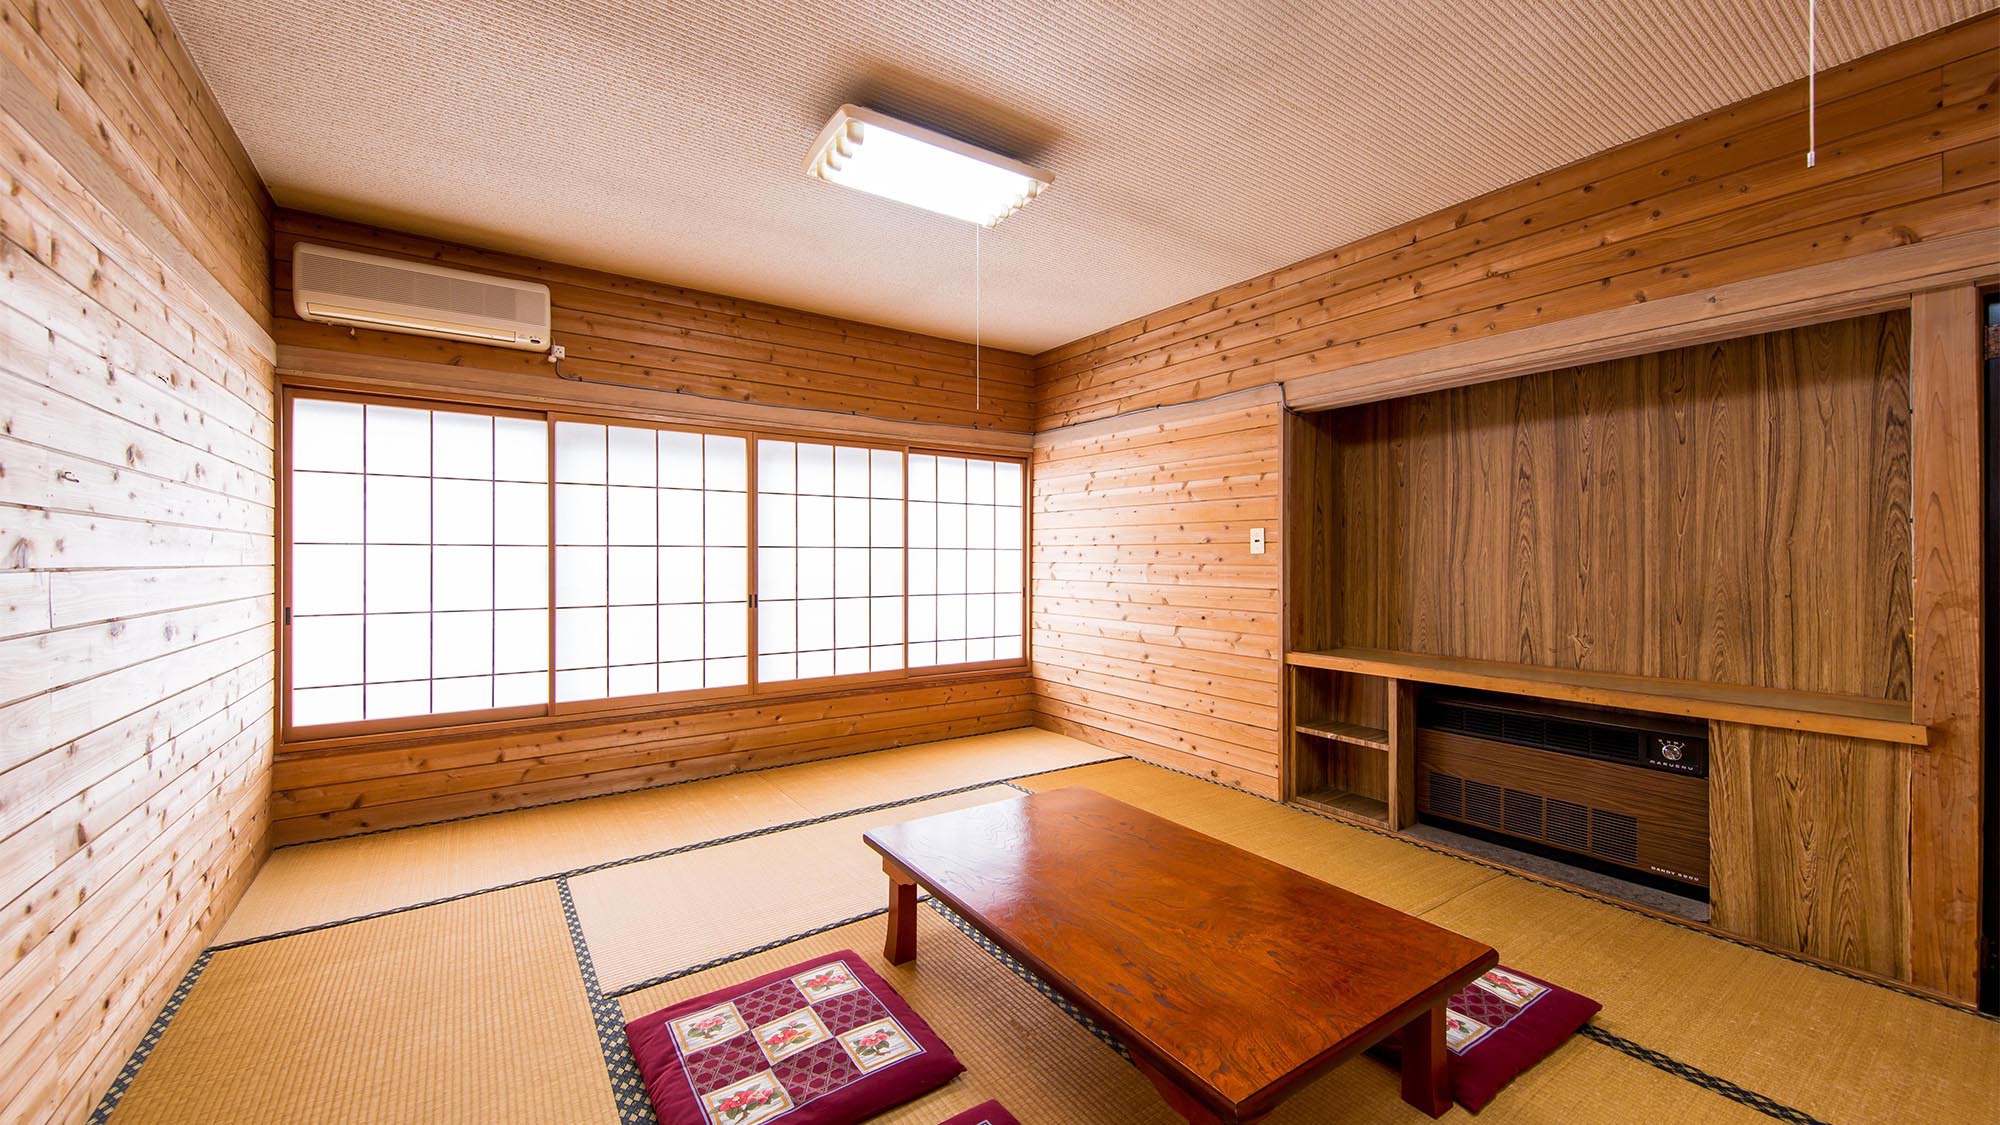 ・【客室一例】山小屋風のお部屋は明るく温かみがある空間